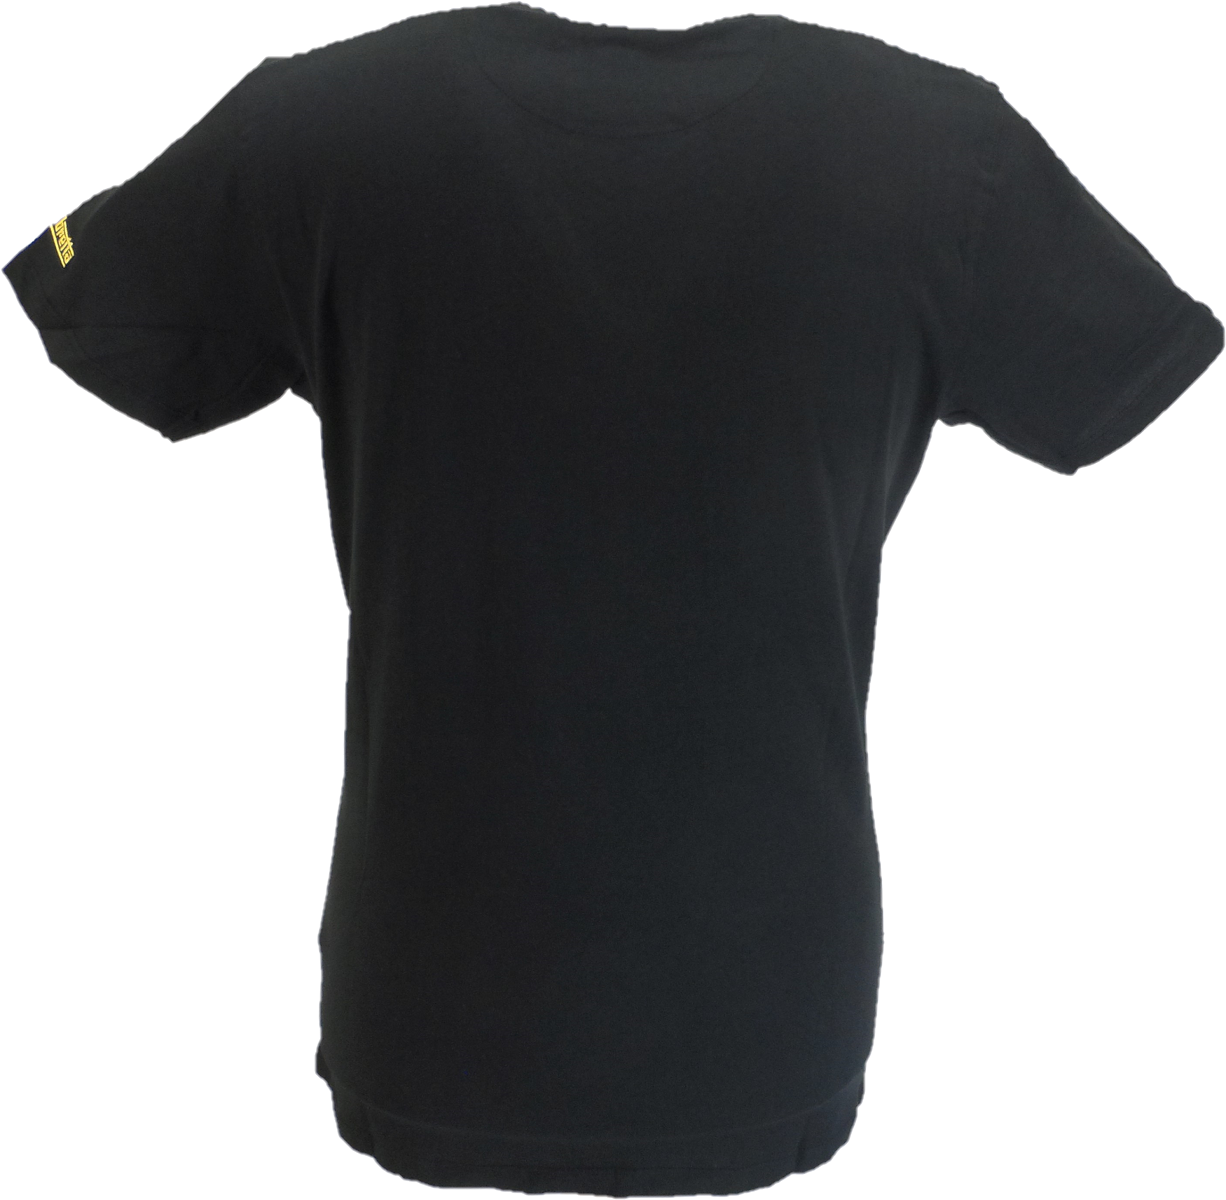 Lambretta t-shirt noir classique à rayures sur la poitrine pour hommes